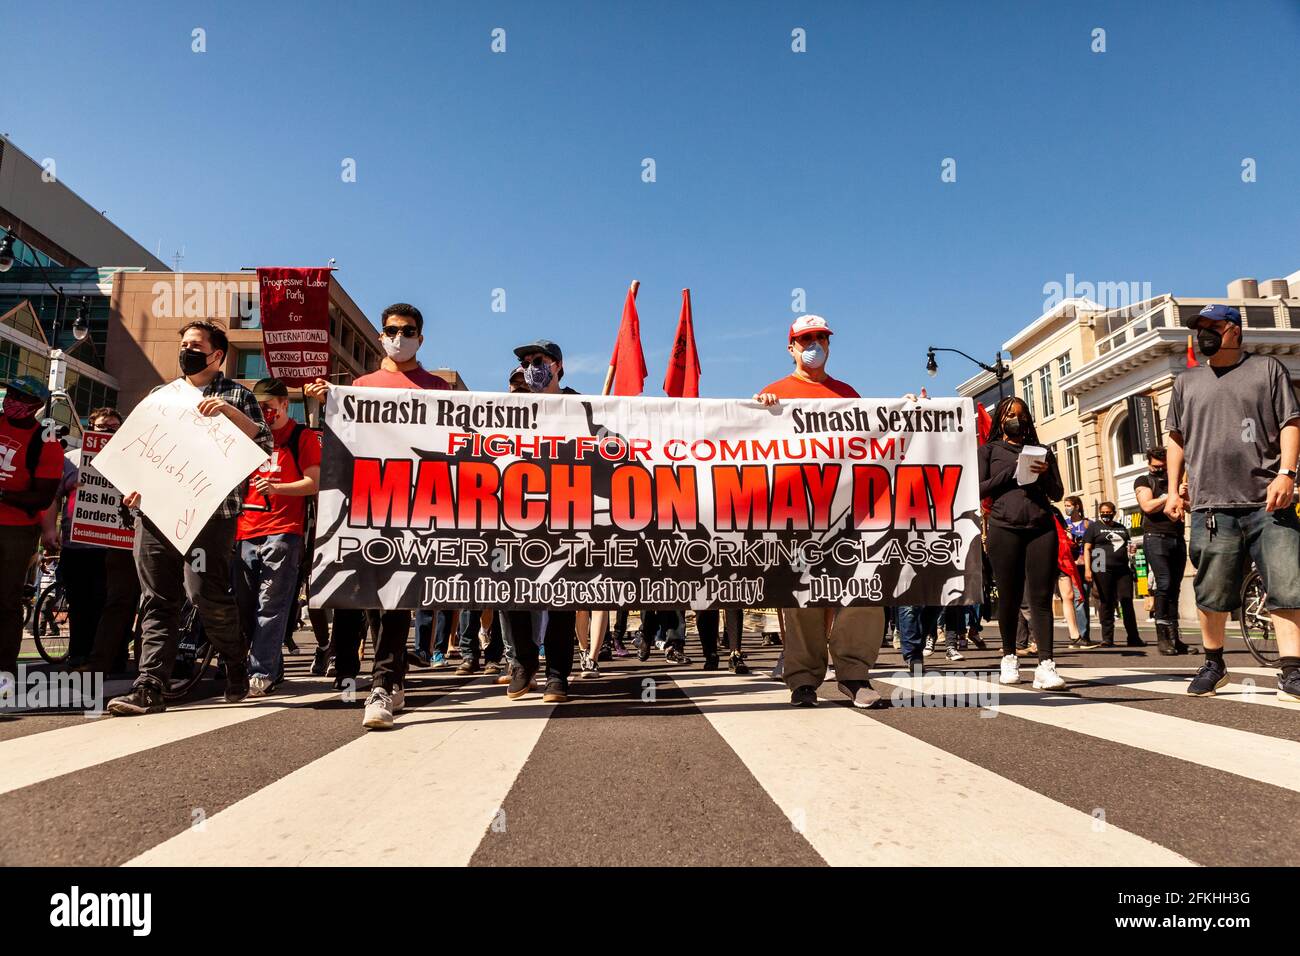 Washington, DC, Etats-Unis, 1er mai 2021. Photo : le Parti progressiste-travailliste et d'autres en faveur du communisme marche pour les droits des travailleurs et les syndicats à l'occasion de la Journée internationale des travailleurs, le 1er mai. Crédit : Allison C Bailey / Alamy Live News Banque D'Images